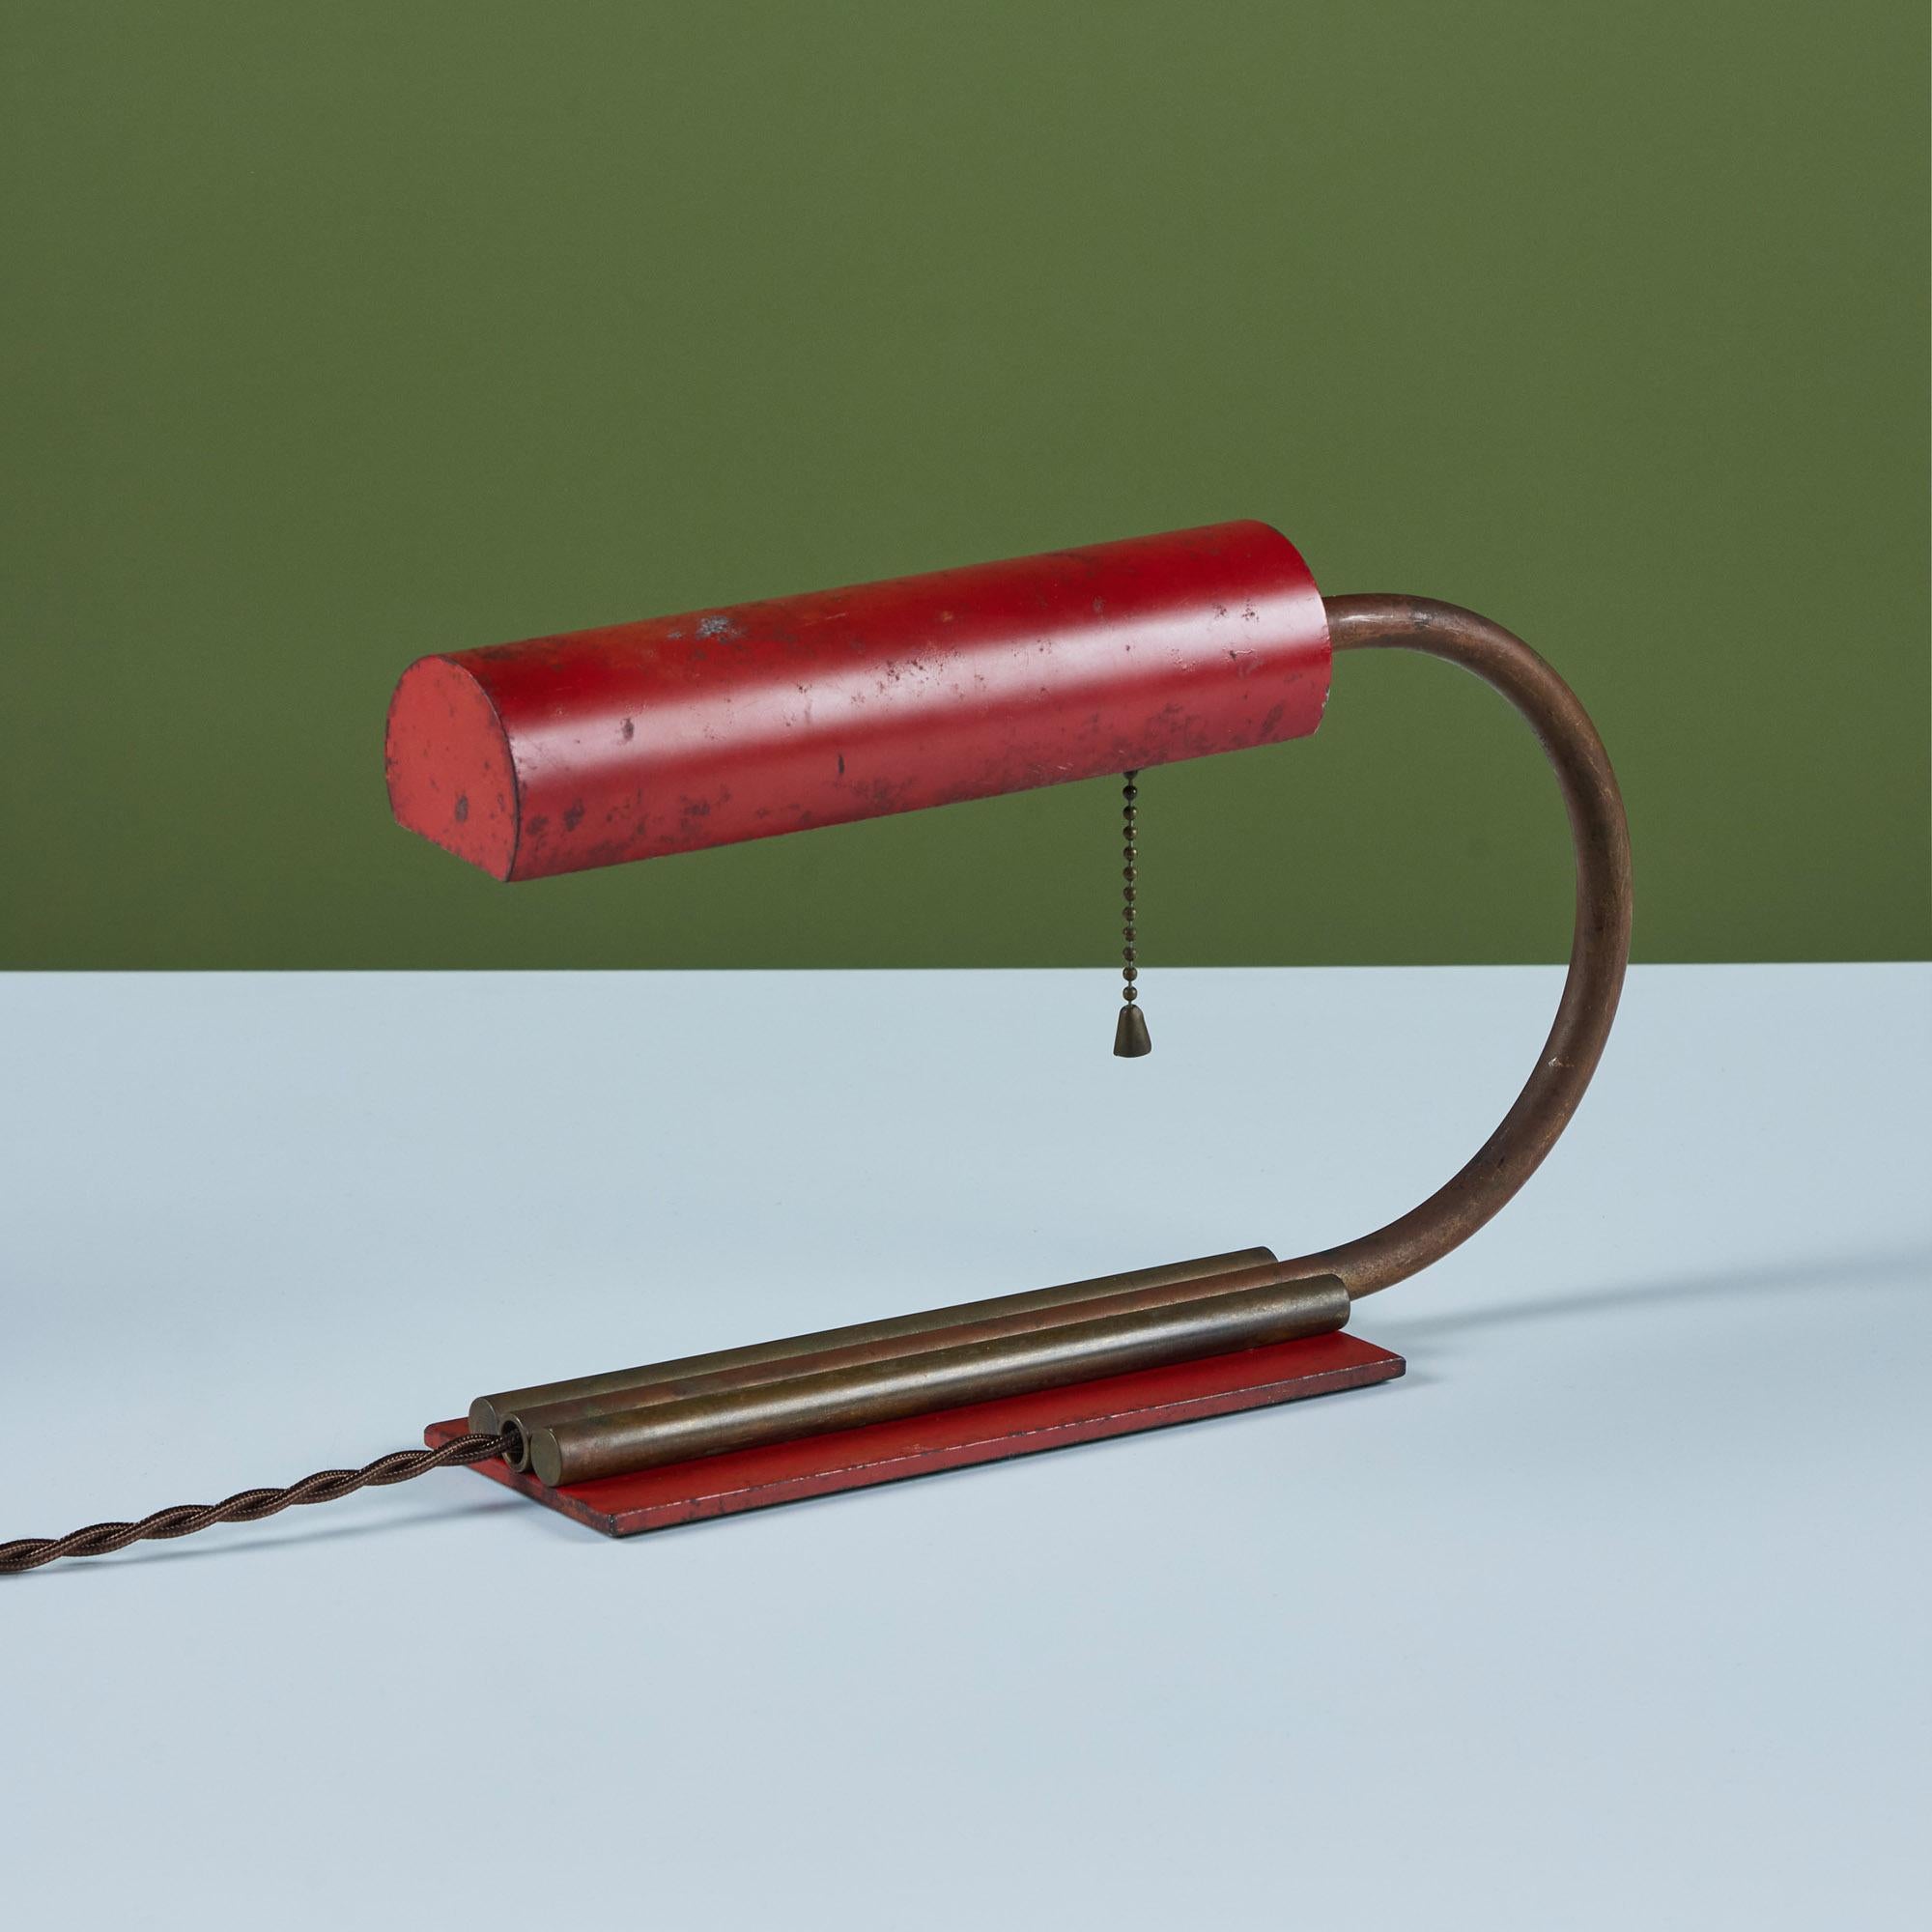 Kleine emaillierte Art-Déco-Schreibtisch- oder Tischlampe im Stil von Gilbert Rohde, ca. 1930er Jahre. Die Leuchte hat einen rot emaillierten, zylindrischen, schwenkbaren Lampenschirm. Der gebogene Messingstiel der Lampe ist mit dem rechteckigen